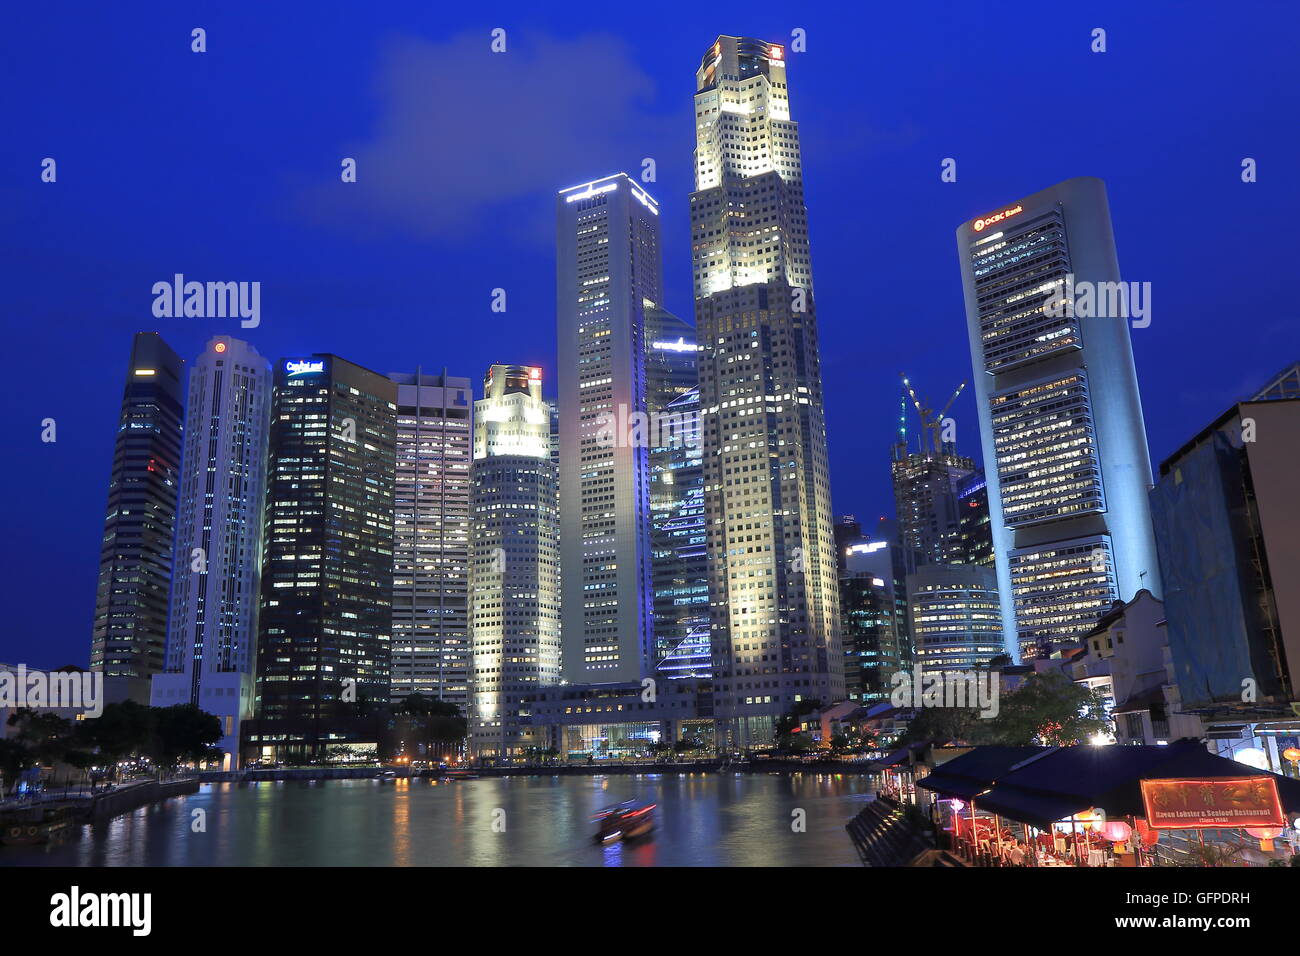 Singapore skyline by night. Stock Photo